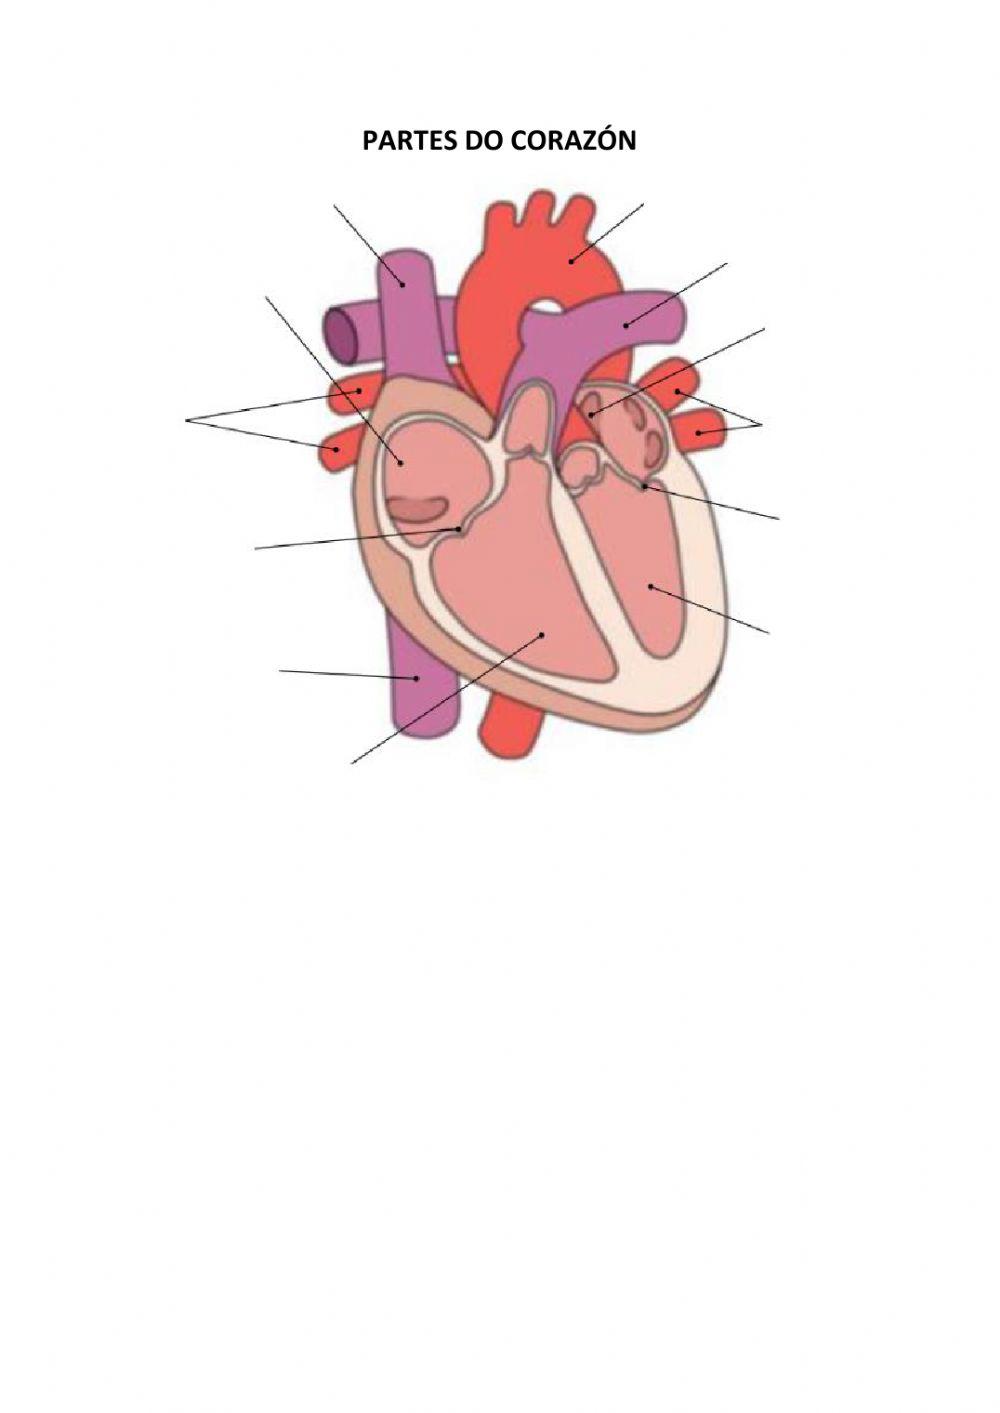 Partes do corazón e veas e arterías